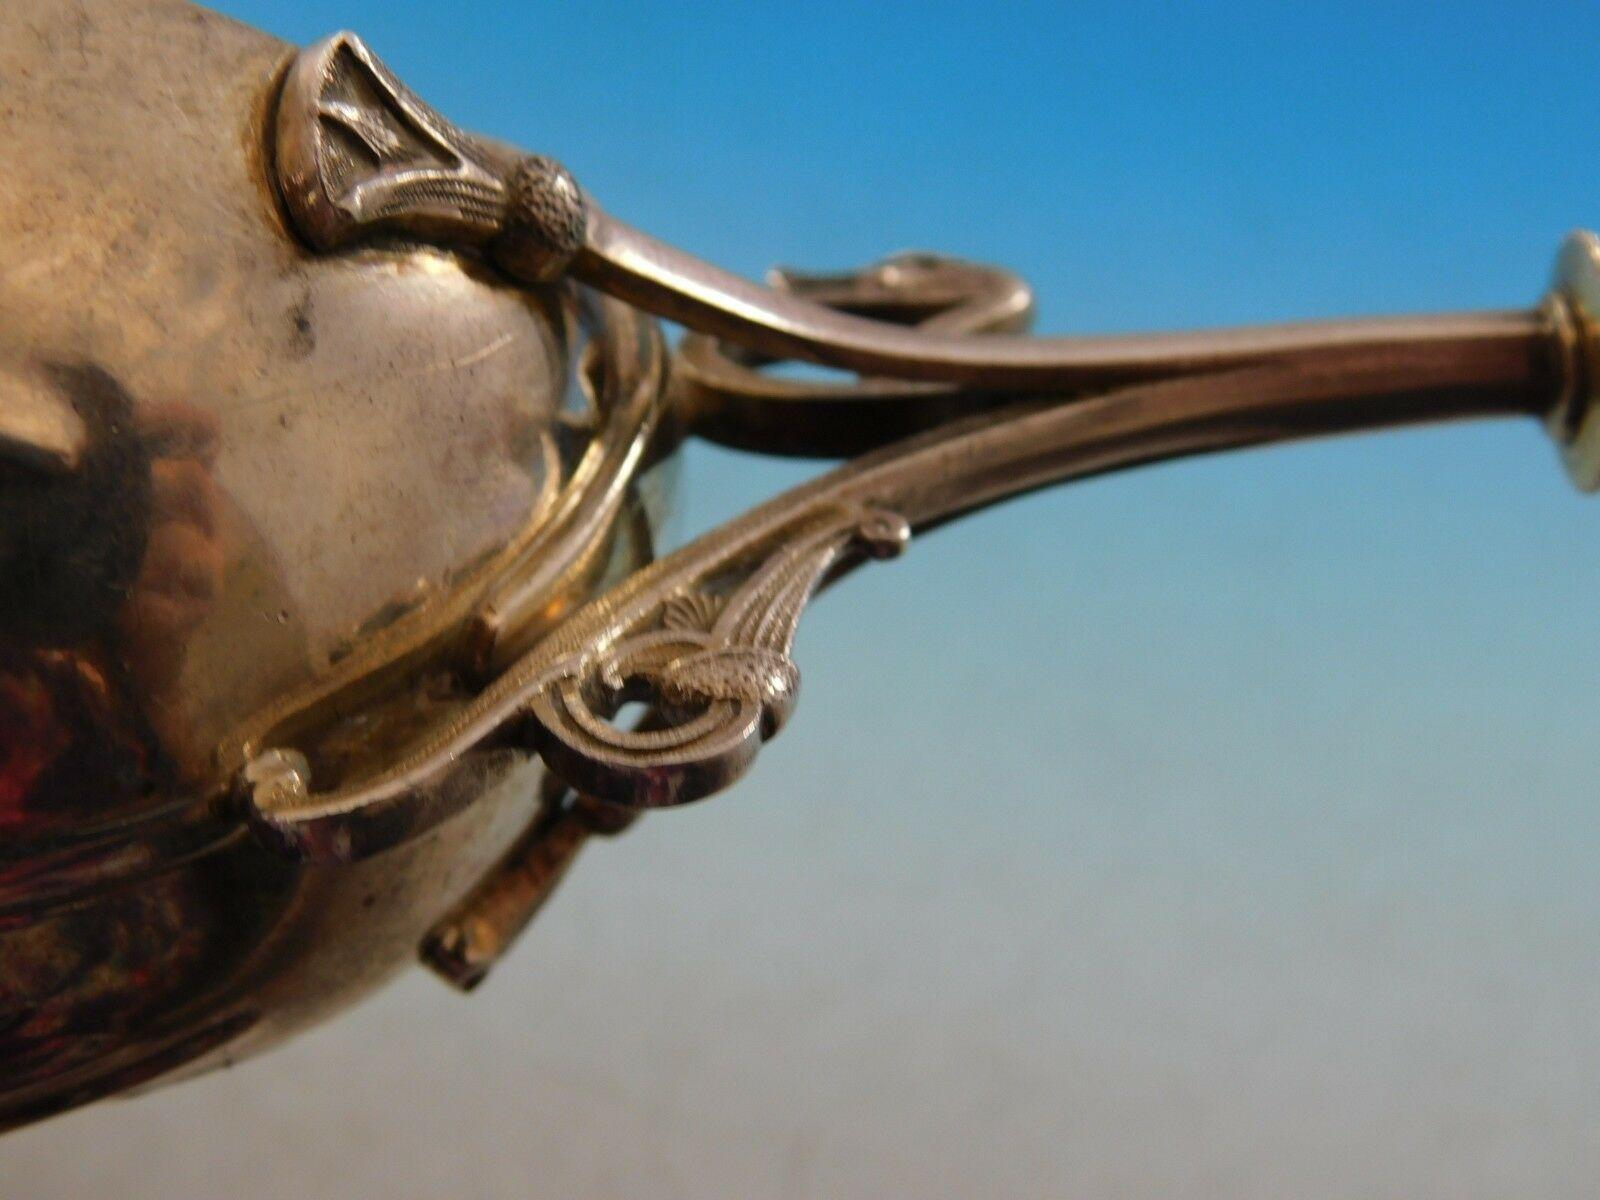 Sterling Silver Art Silver circa 1860-1883 Coin Silver Master Nut Spoon GW Egyptian Motif Snake